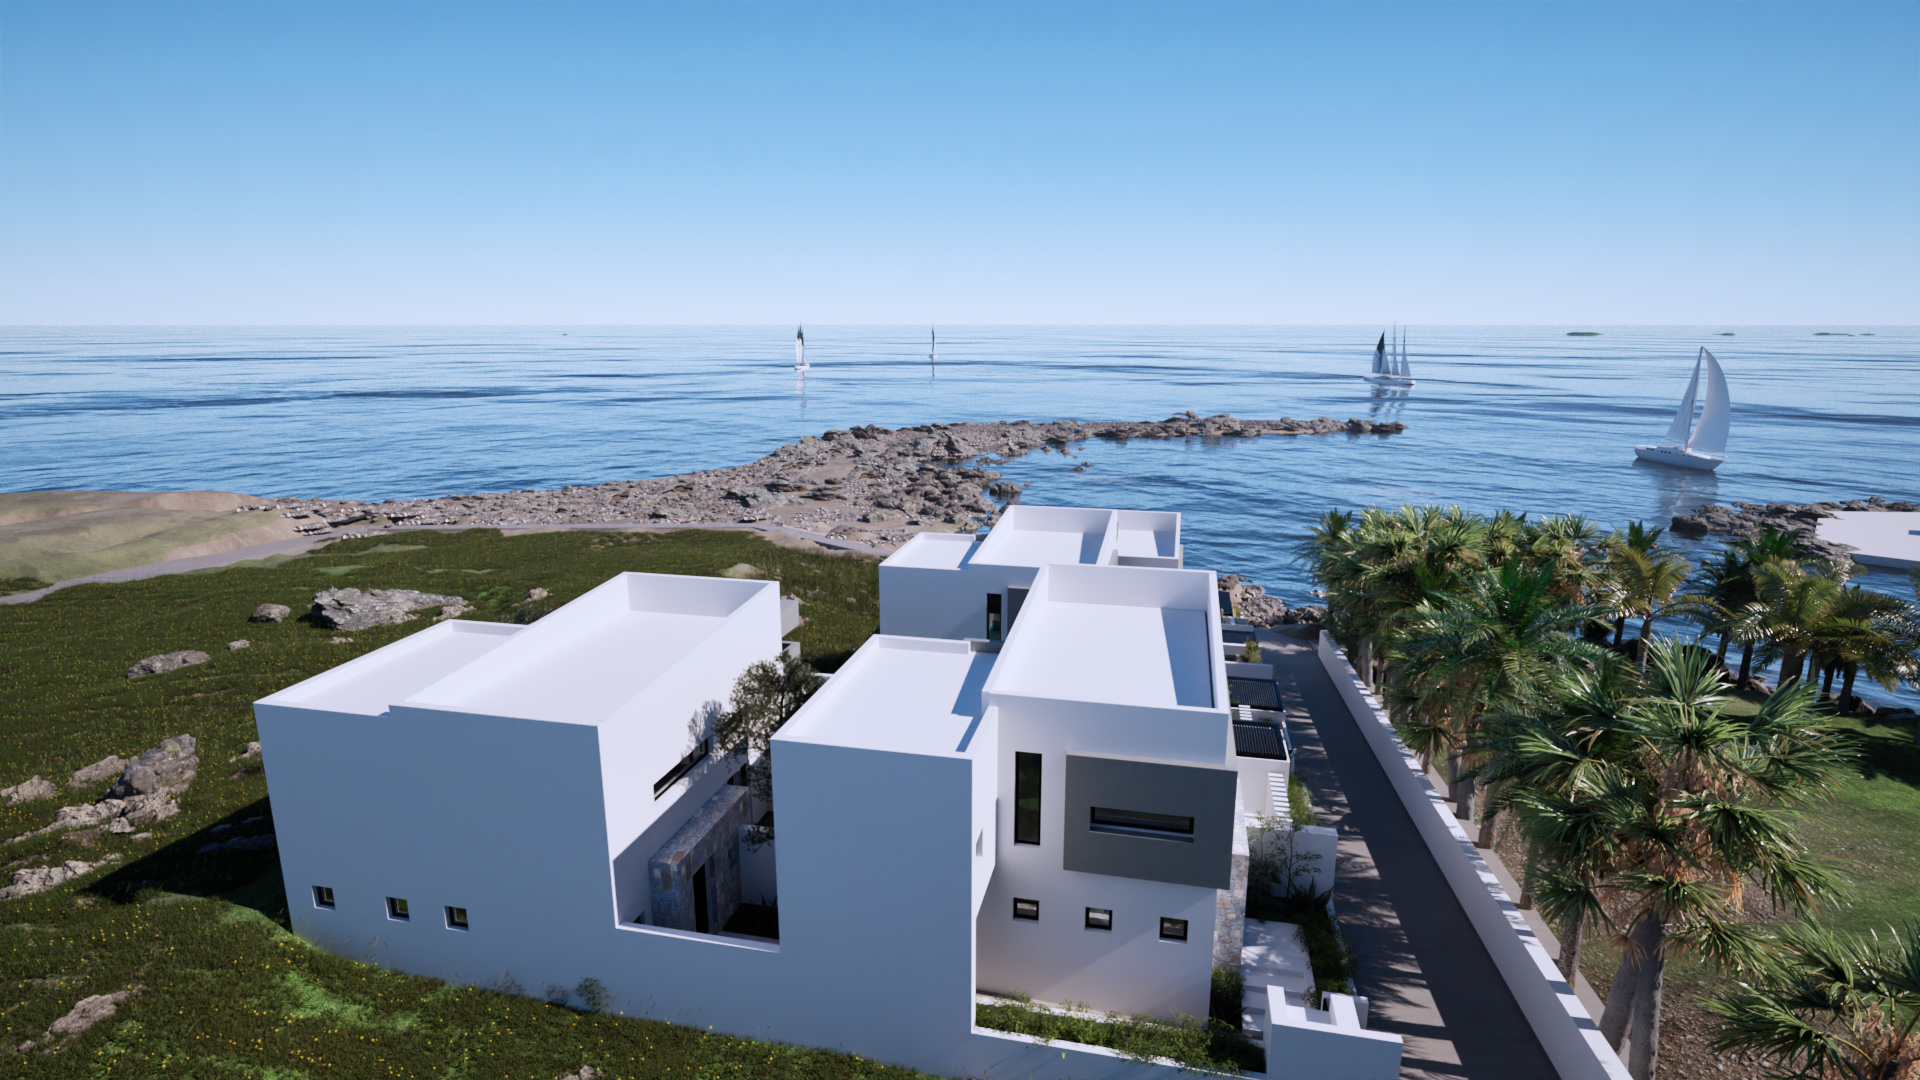 Uitstekend kustcomplex van 4 huizen aan zee.